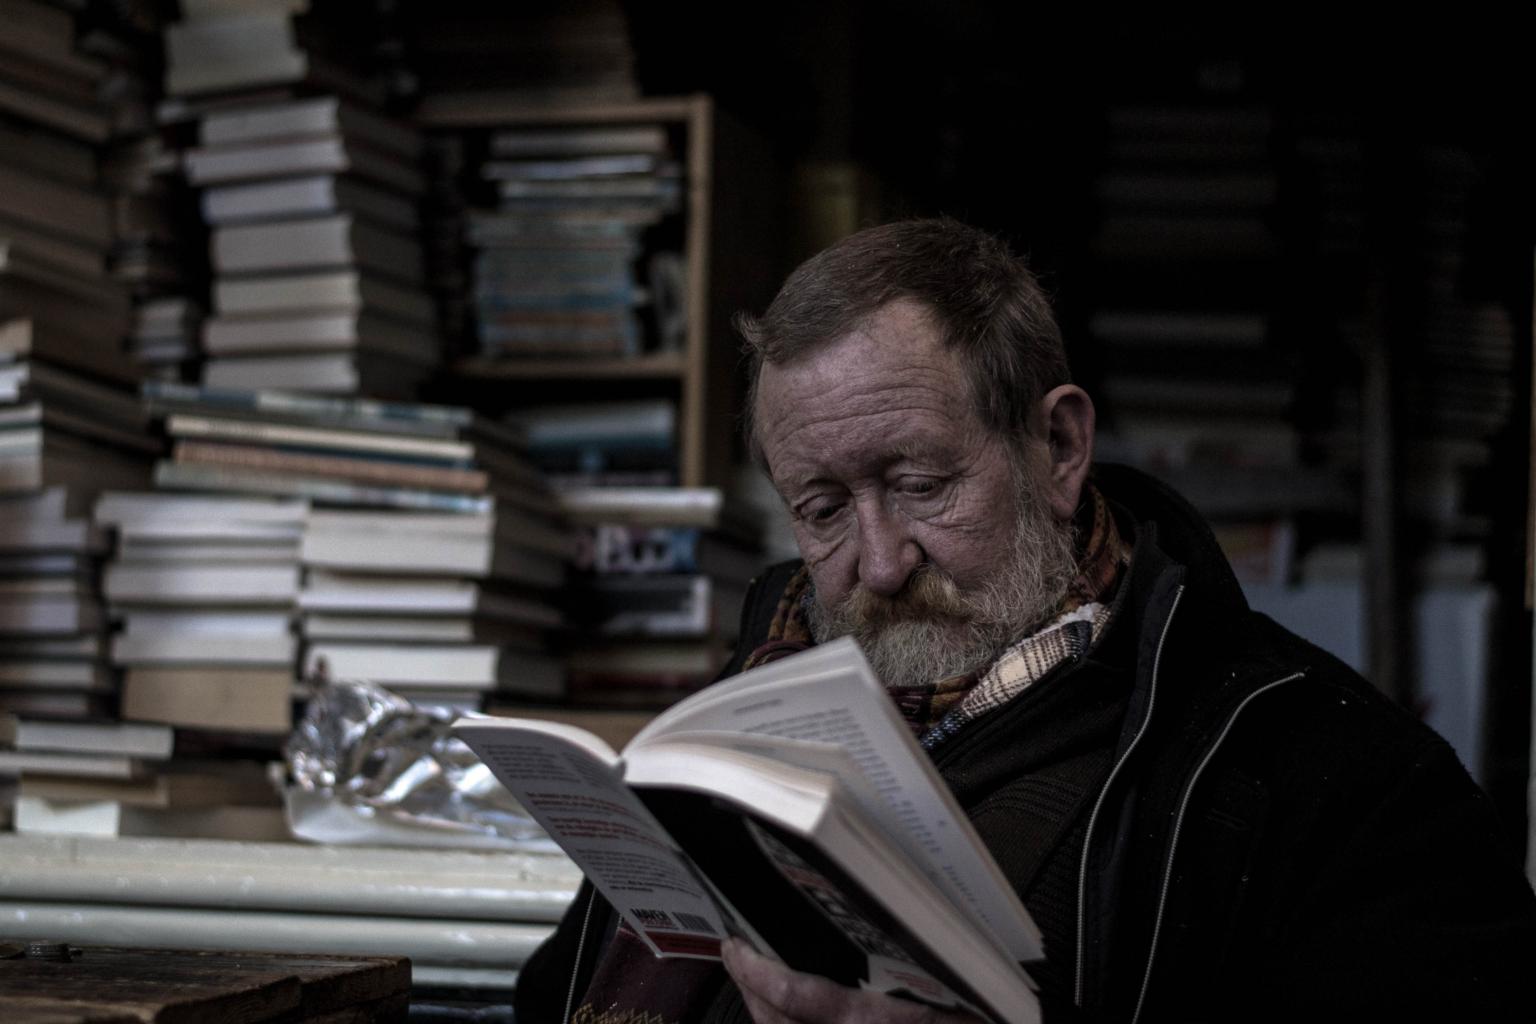 Lesender Mann (c) Foto von Jilbert Ebrahimi auf Unsplash